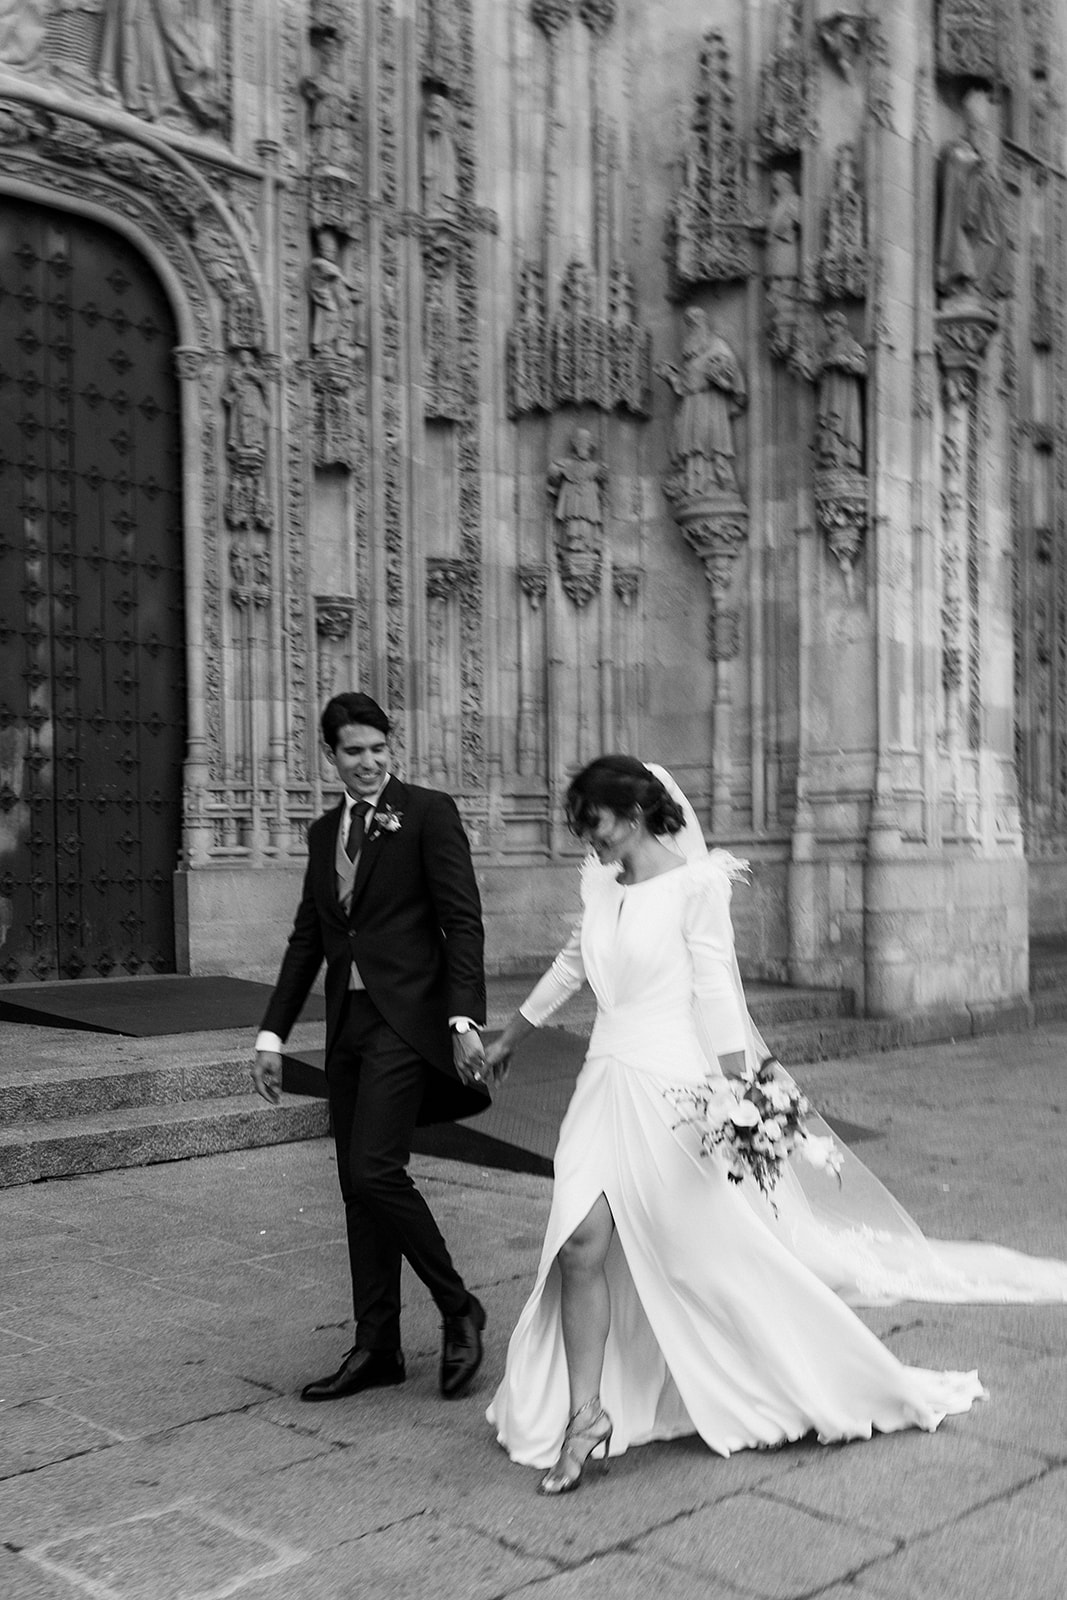 Fotografía de boda en Salamanca, momento natural y espontáneo lleno de amor y felicidad